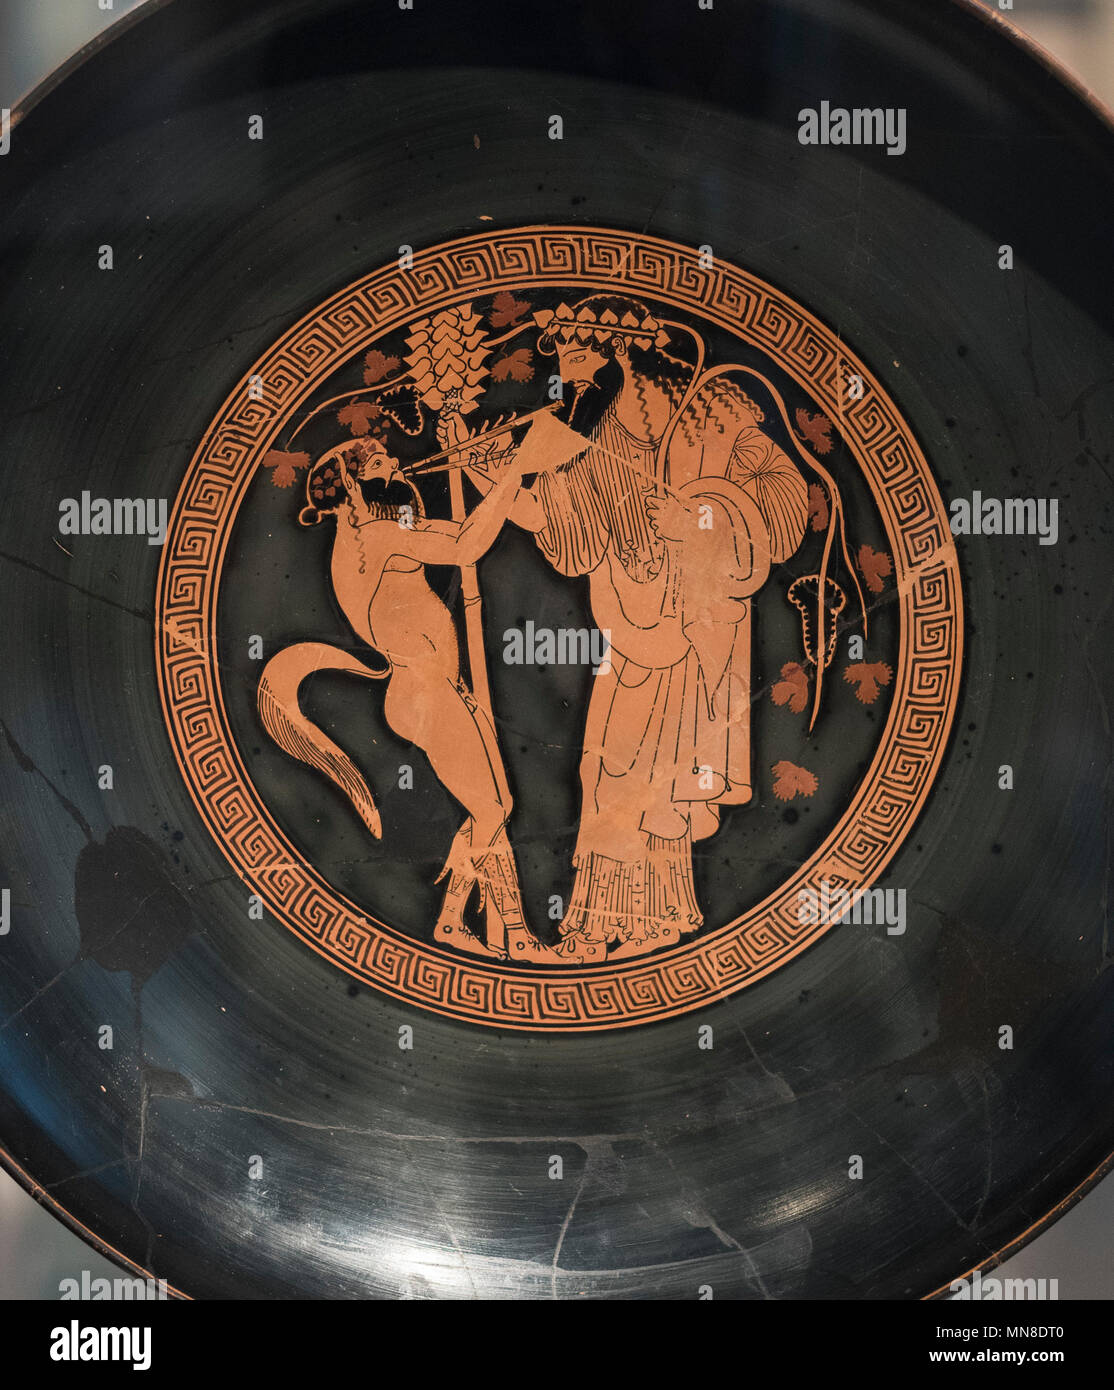 Berlin. L'Allemagne. Altes Museum. Tasse de boisson Makron : le culte de Dionysos, Dionysos et une satyre se font face. Grenier-figure rouge tasse / Kylix fait b Banque D'Images